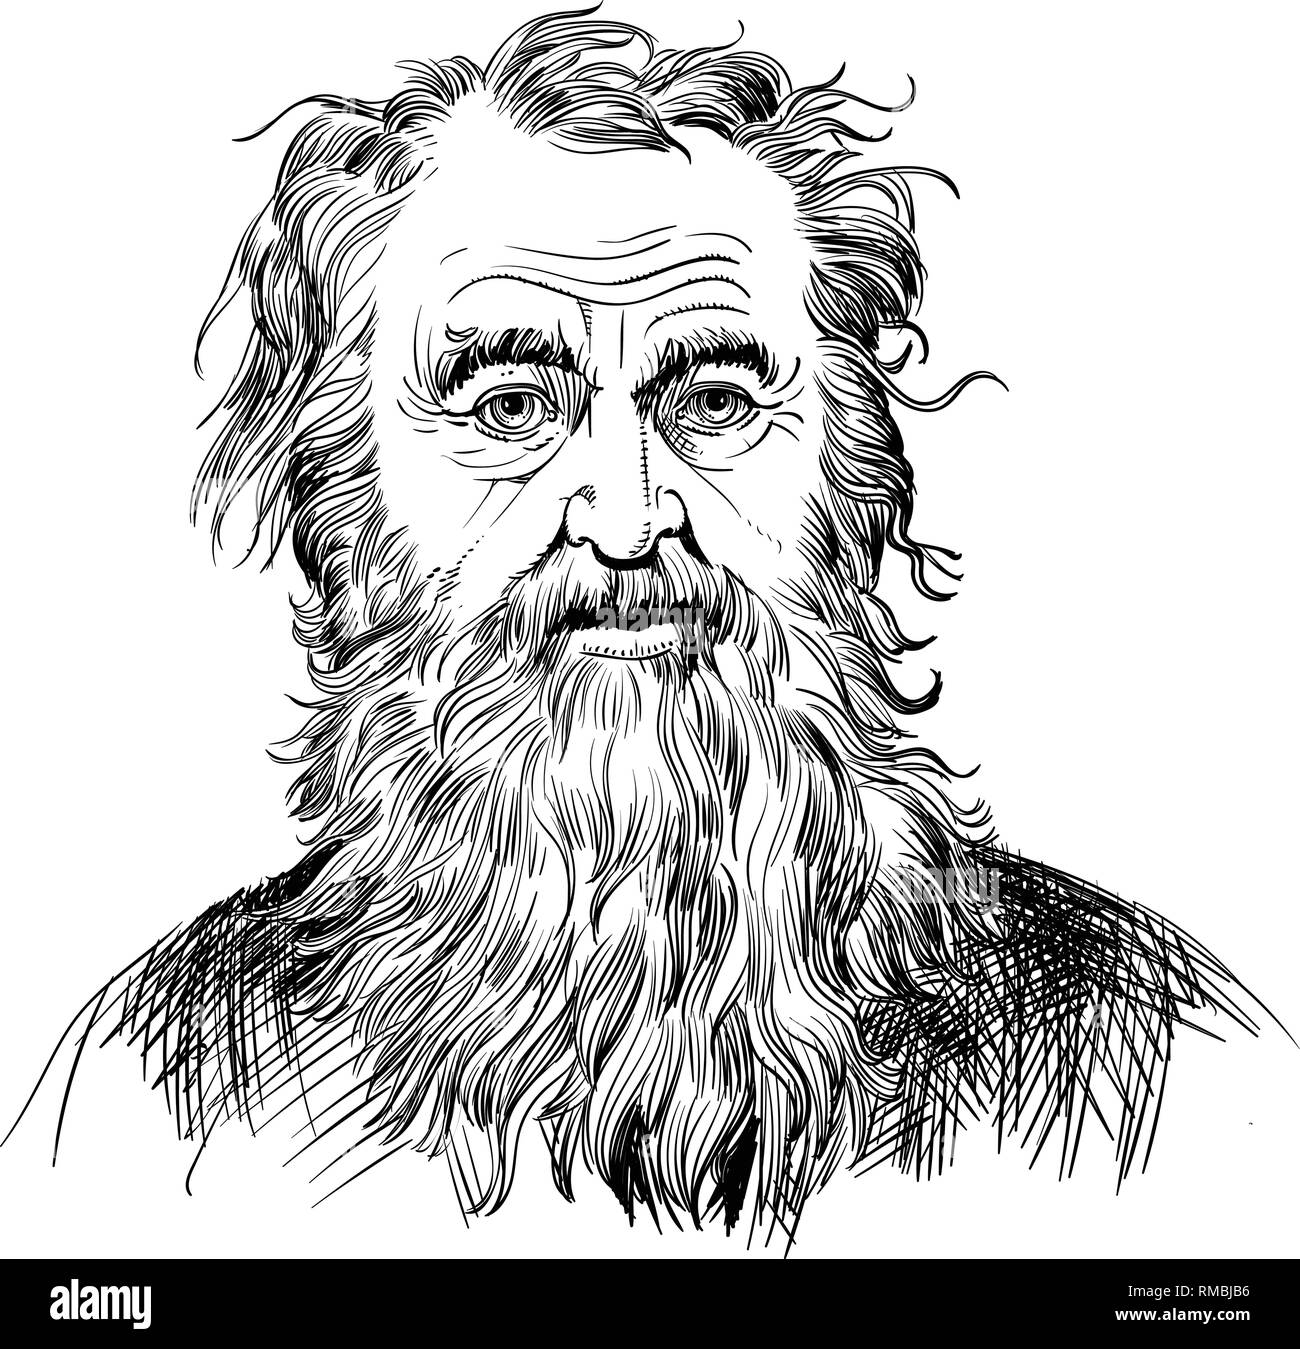 Diogenes der Zyniker Portrait im Einklang Art Illustration. Er war antiken griechischen Philosophen, einer der Gründer der Zyniker Philosophie. Stock Vektor